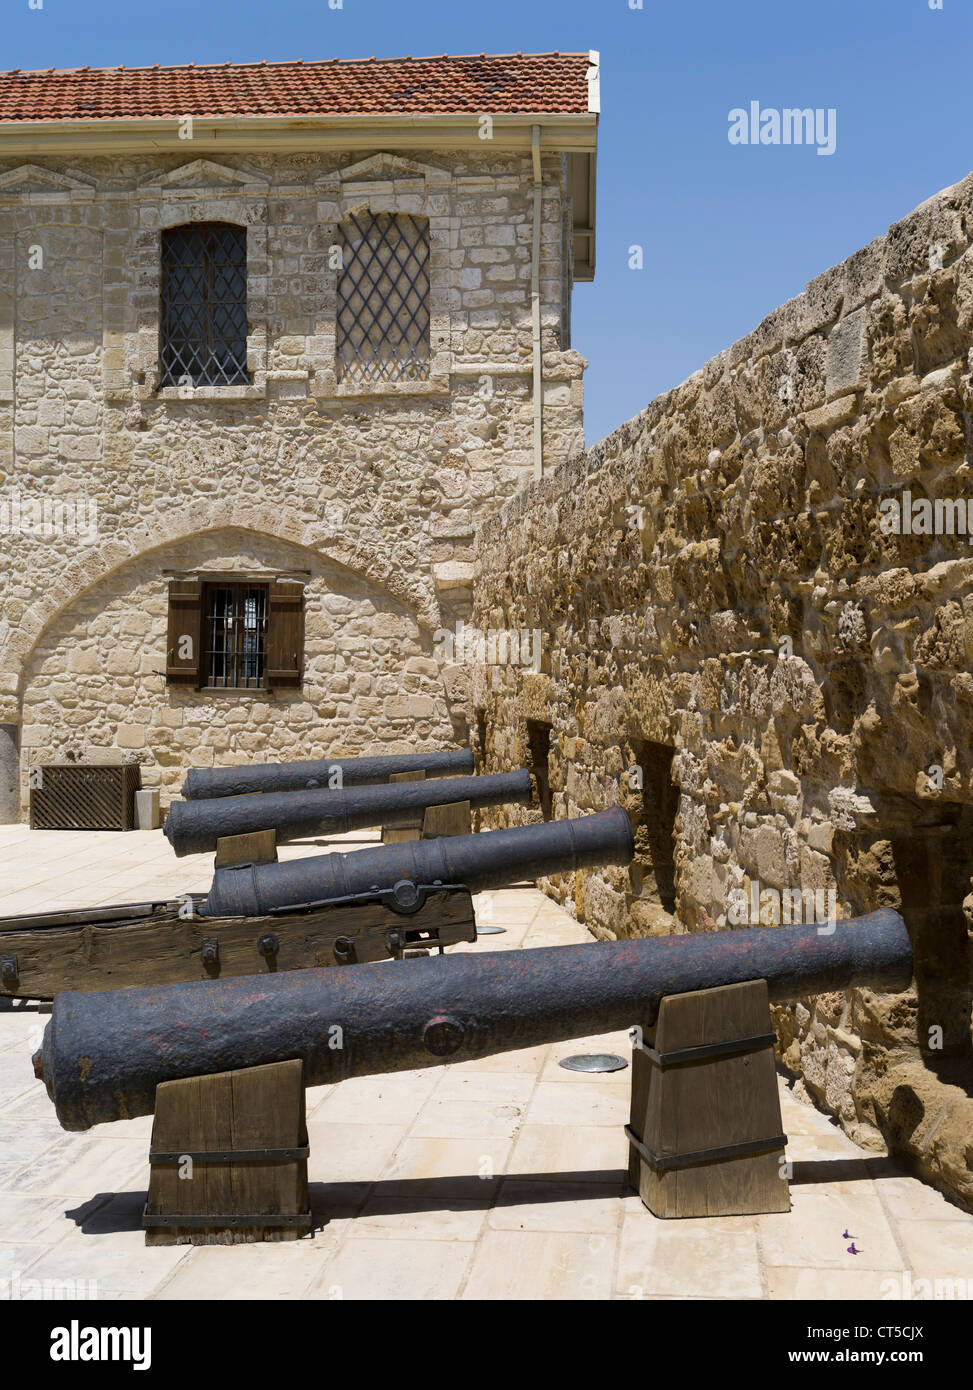 dh Larnaca Fort LARNACA ZYPERN Alte brisitische Kanonen Larnaka Fort Gebäude Mauern Lokales mittelalterliches Museum griechische Insel Burg Befestigungskanone Stockfoto